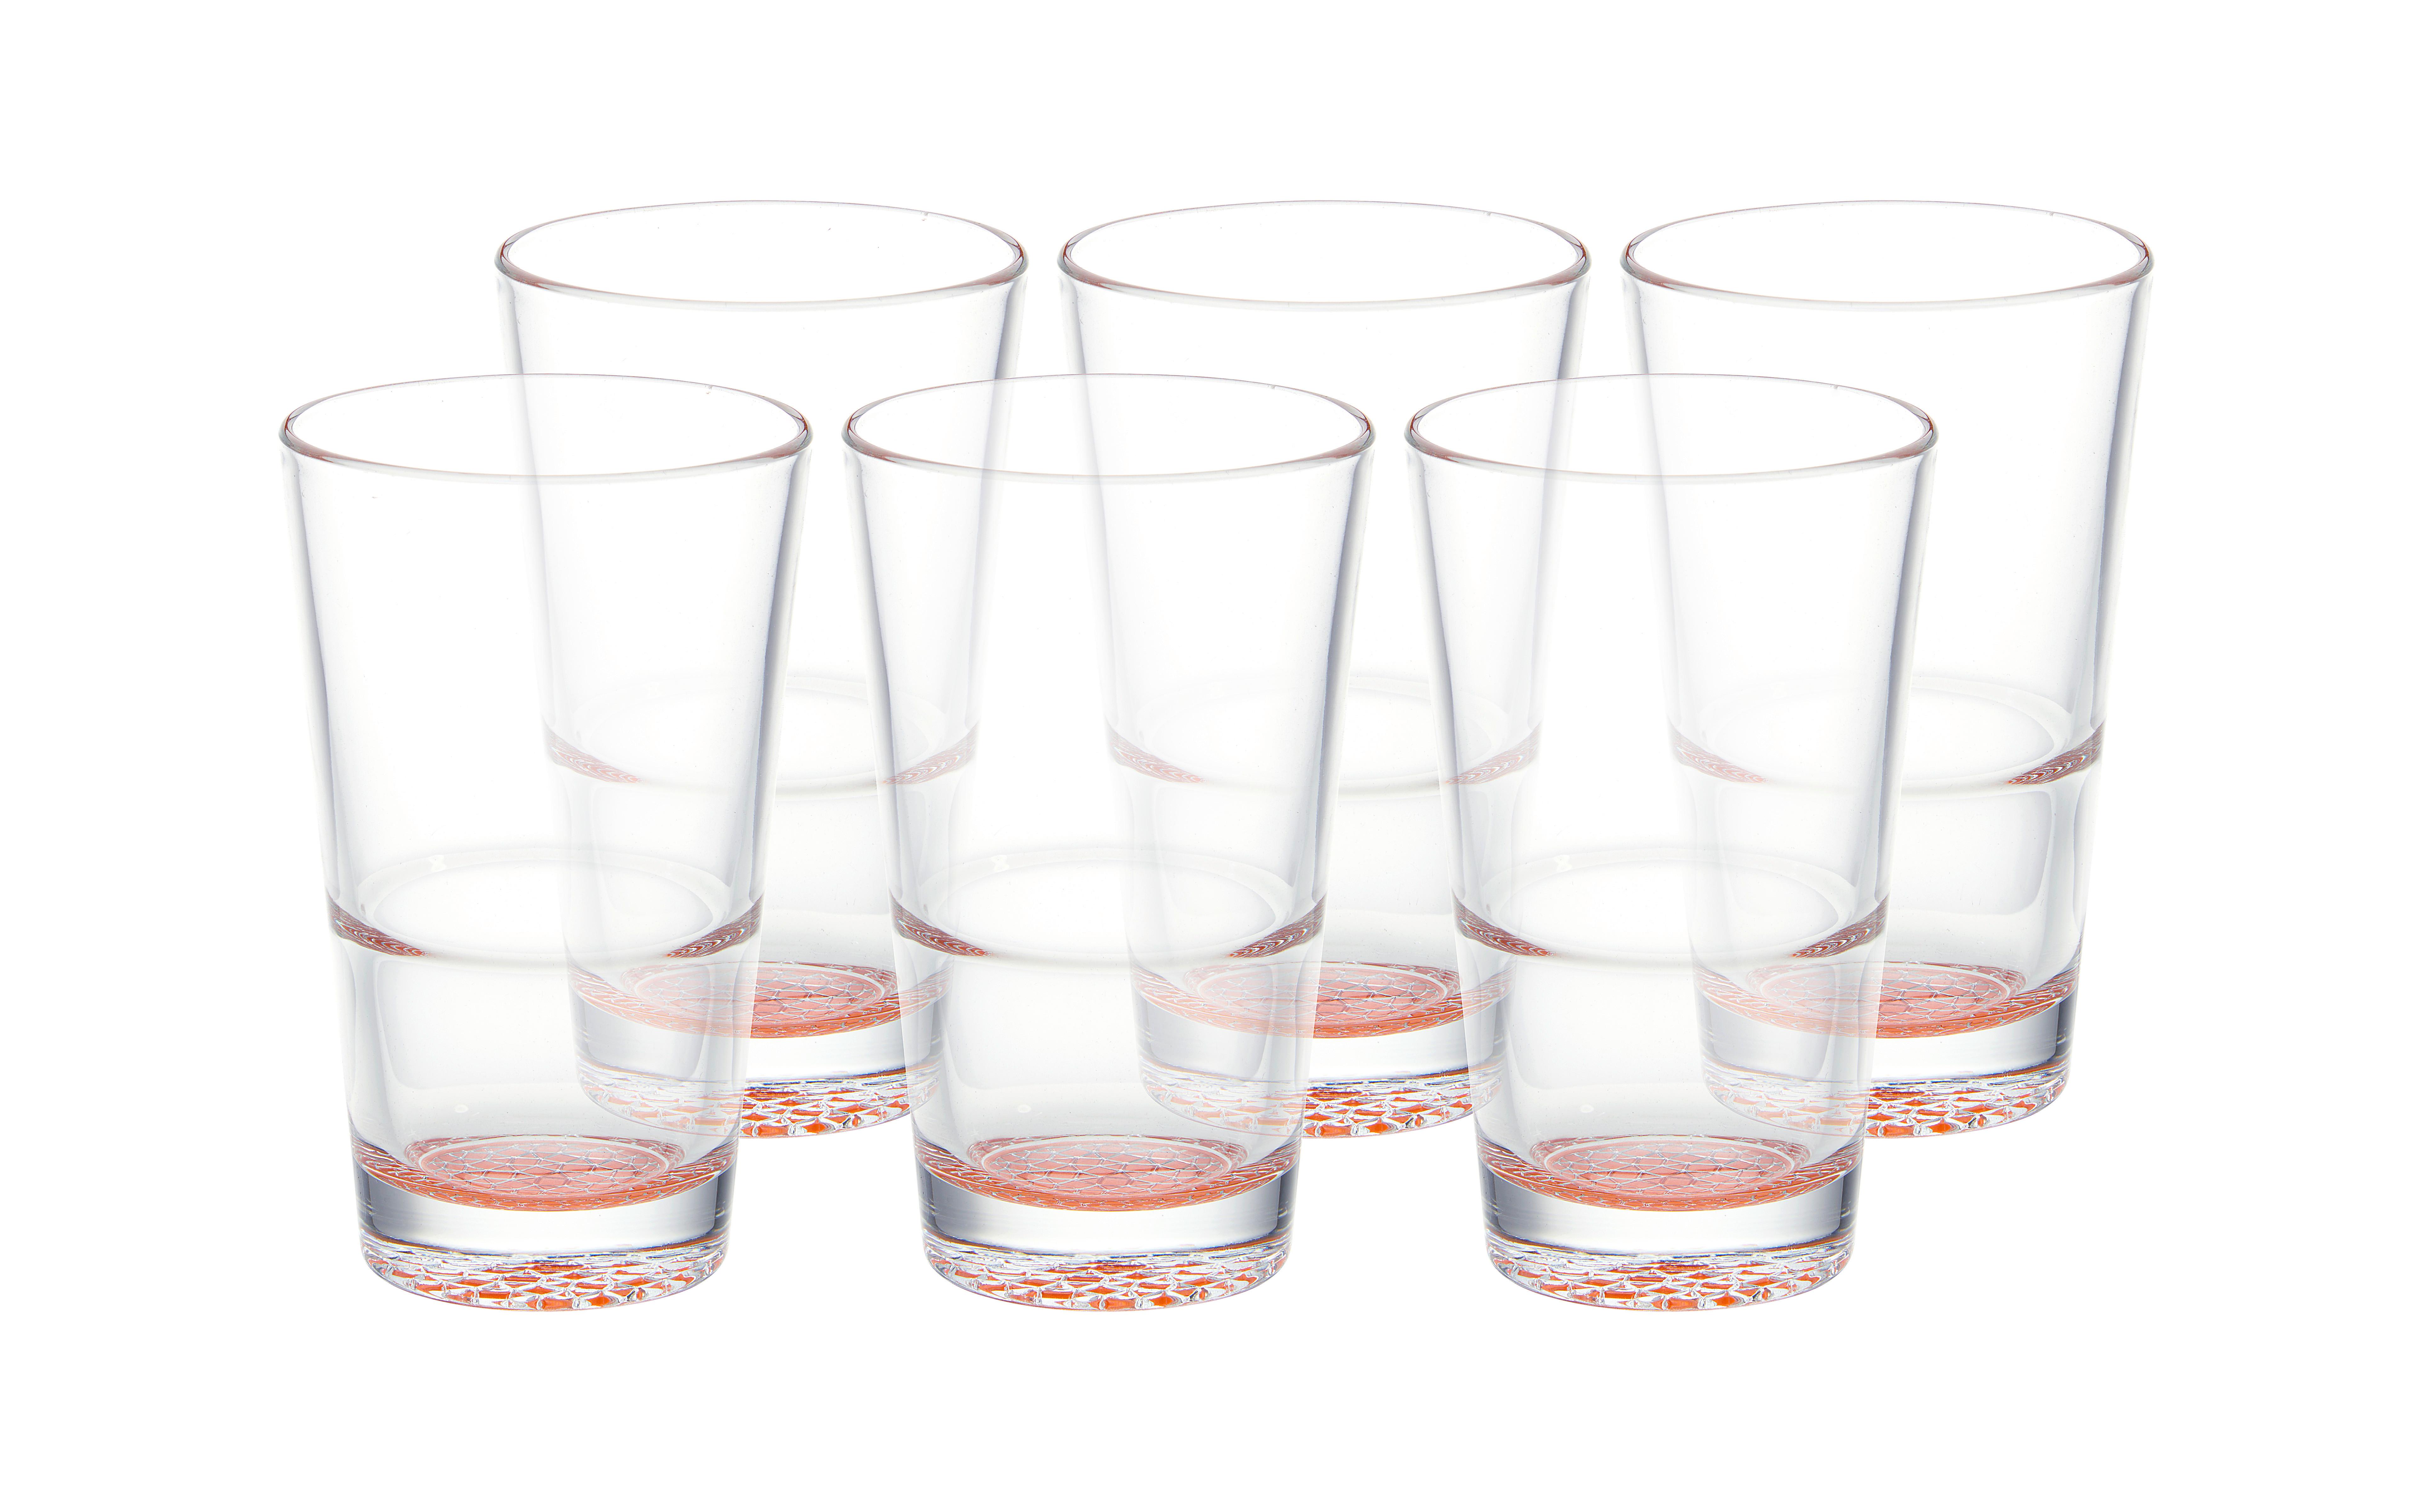 Gläserset Agneto in Orange, 6-teilig - Orange, MODERN, Glas (420ml) - Bessagi Home